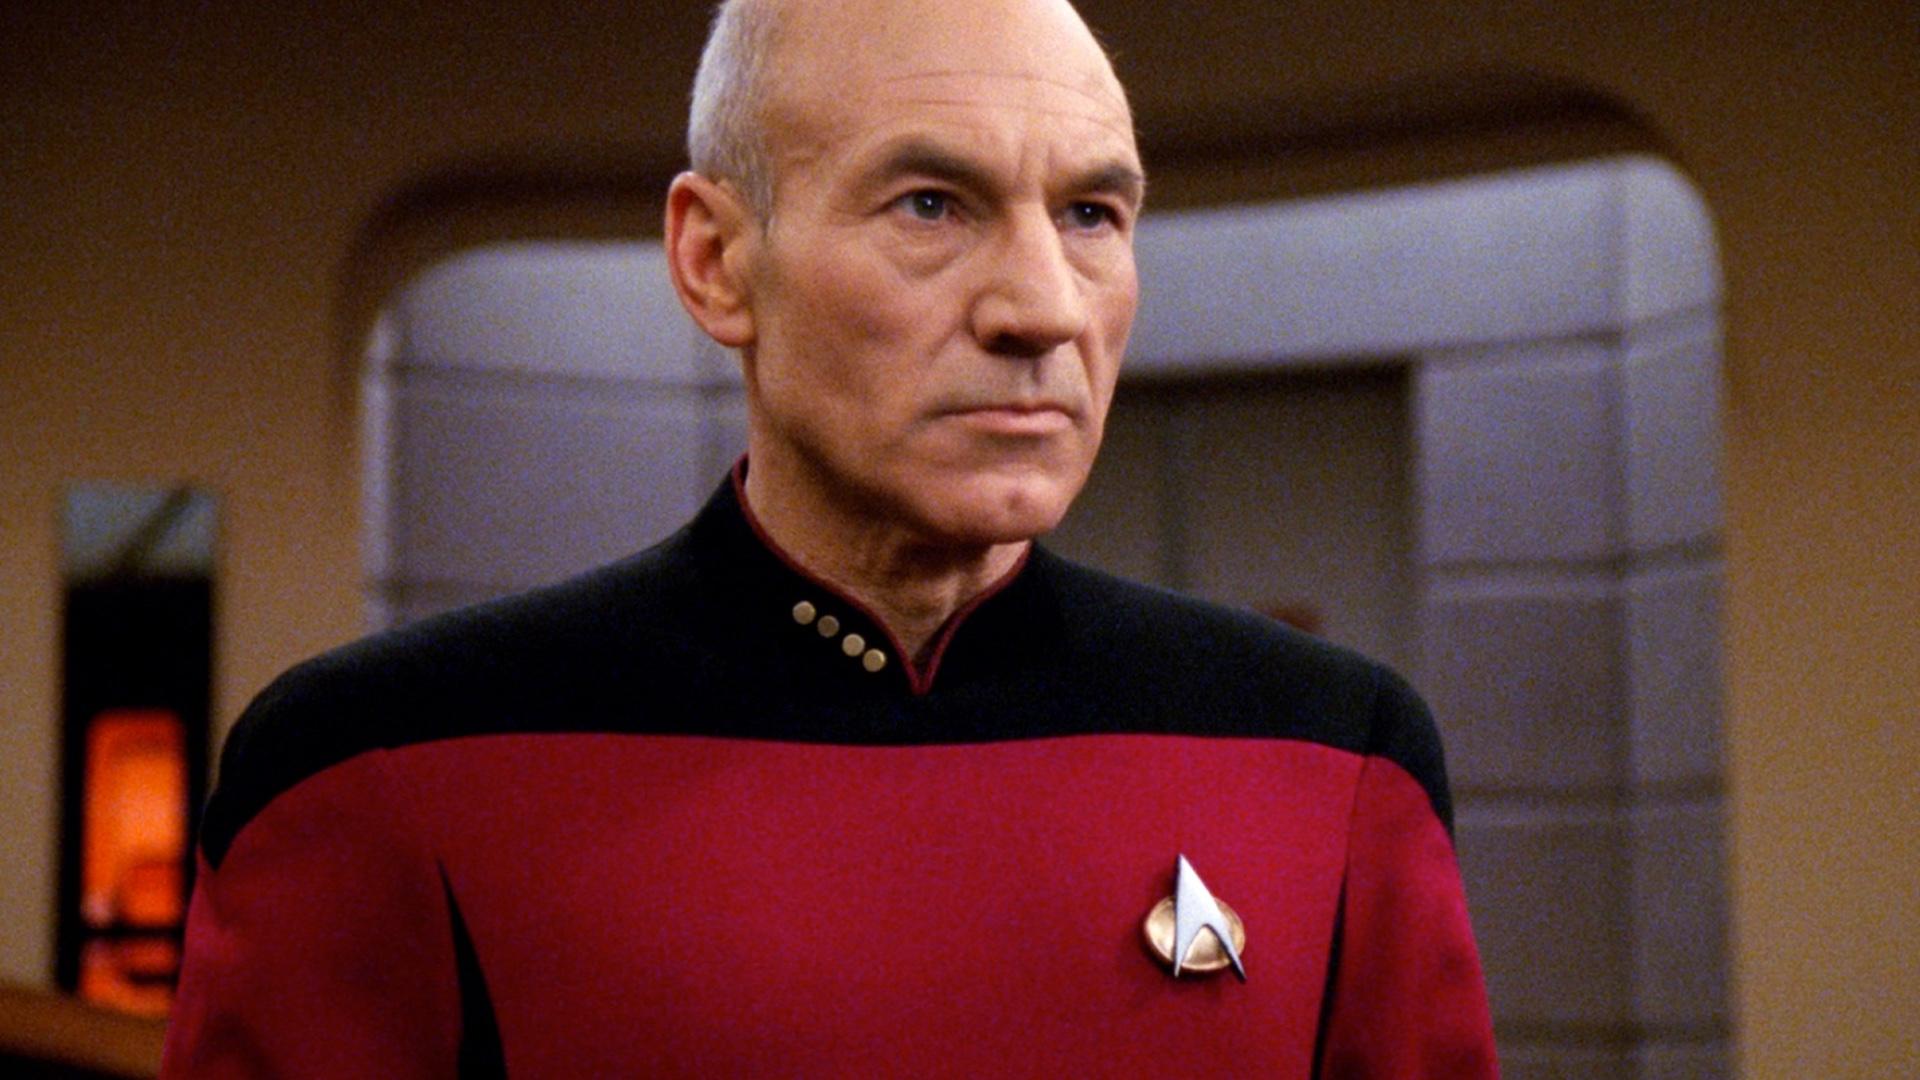 Patrick Stewart confirma retorno como Picard em Star Trek